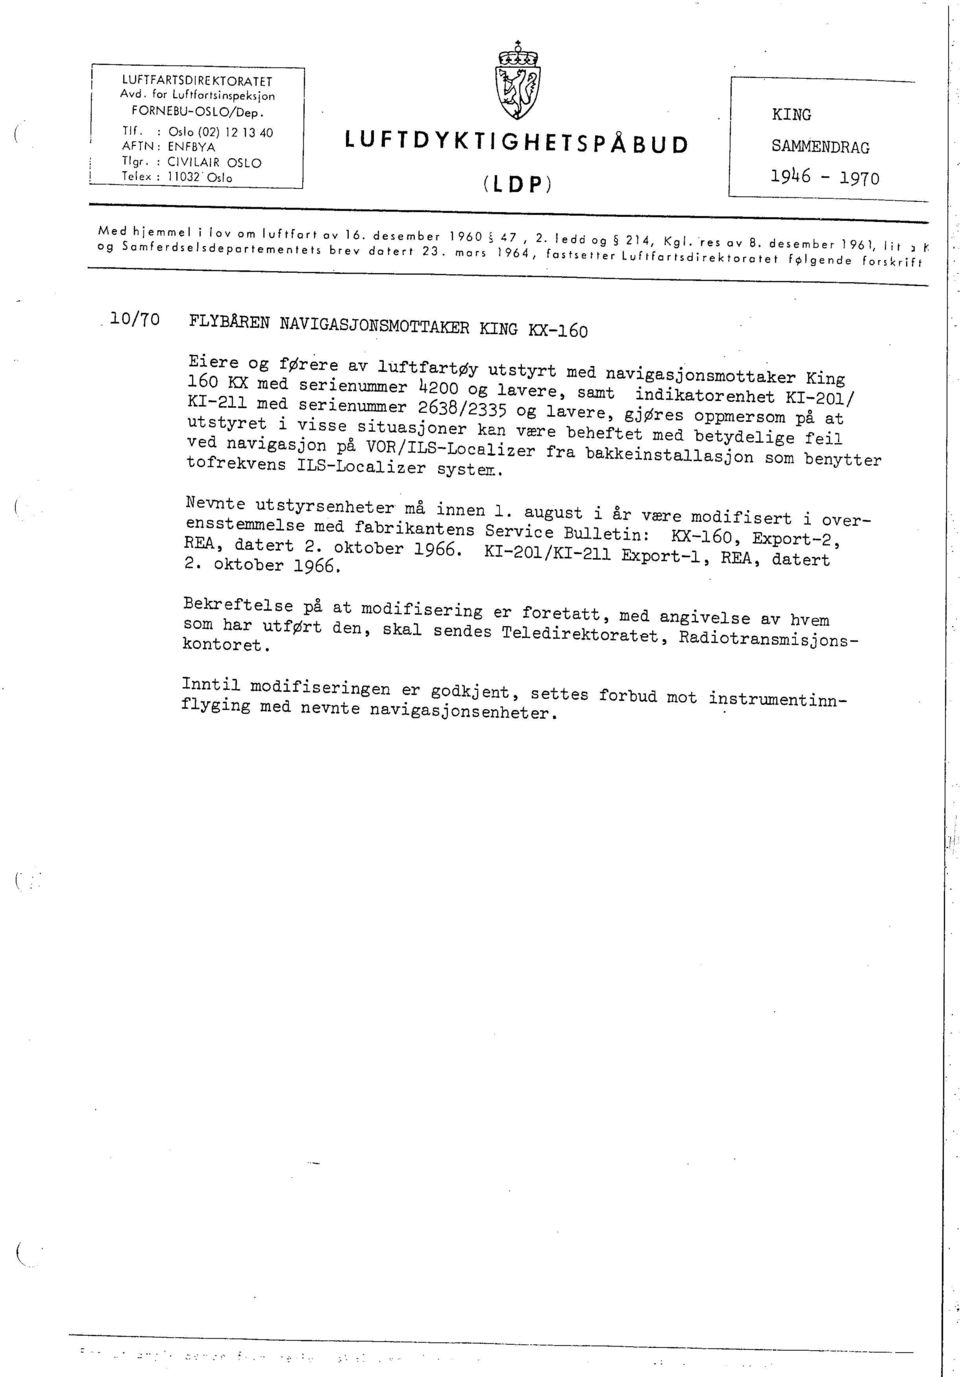 mors 1964, fastsetter luftfartsdirektoratet f. lgende forskrift res oy 8. desember 1961, lit l r.